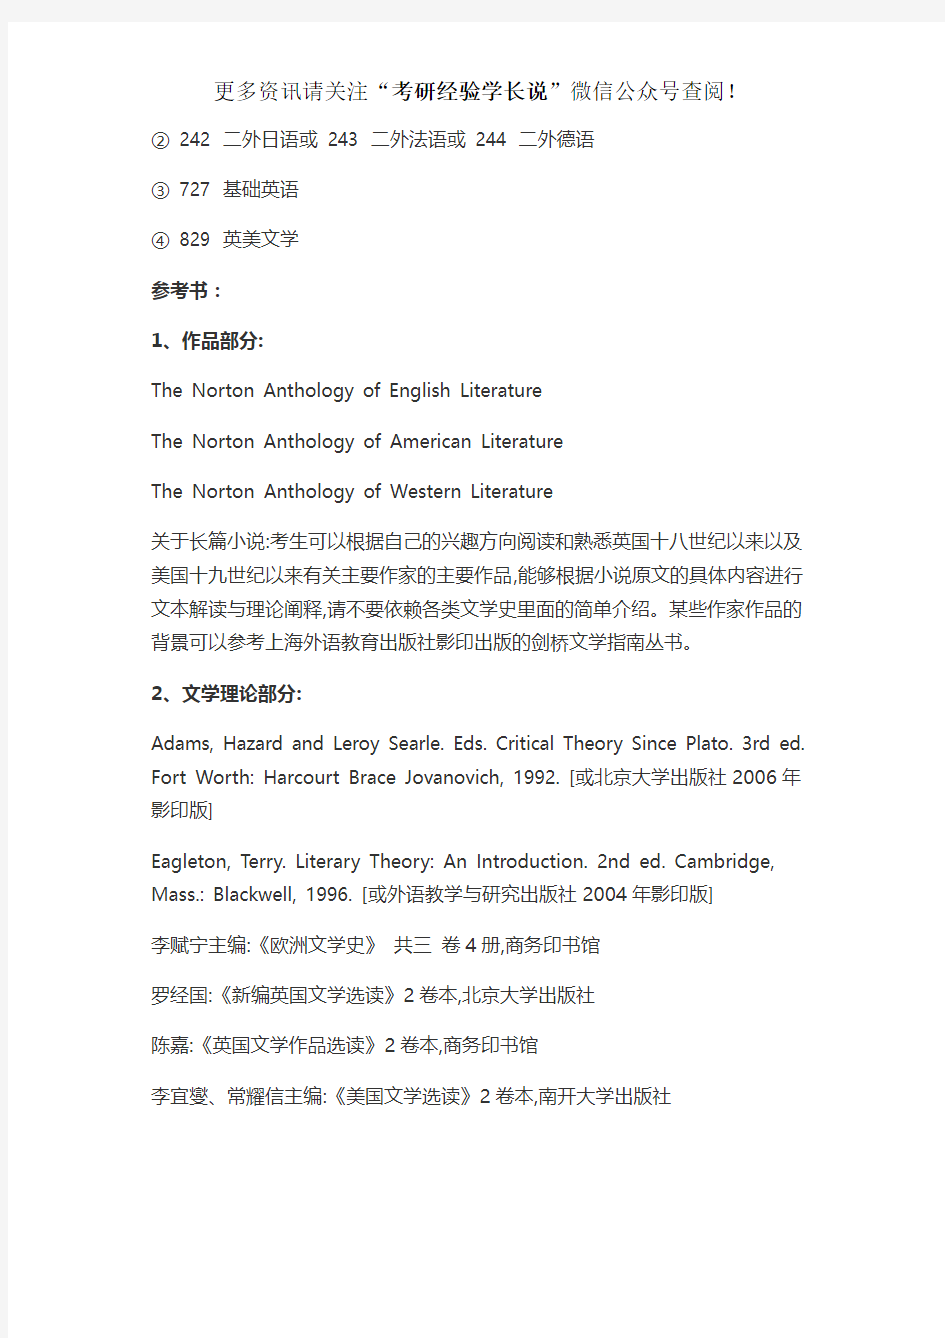 2020年北京语言大学英语语言文学考研初试科目、参考书目等备考分析